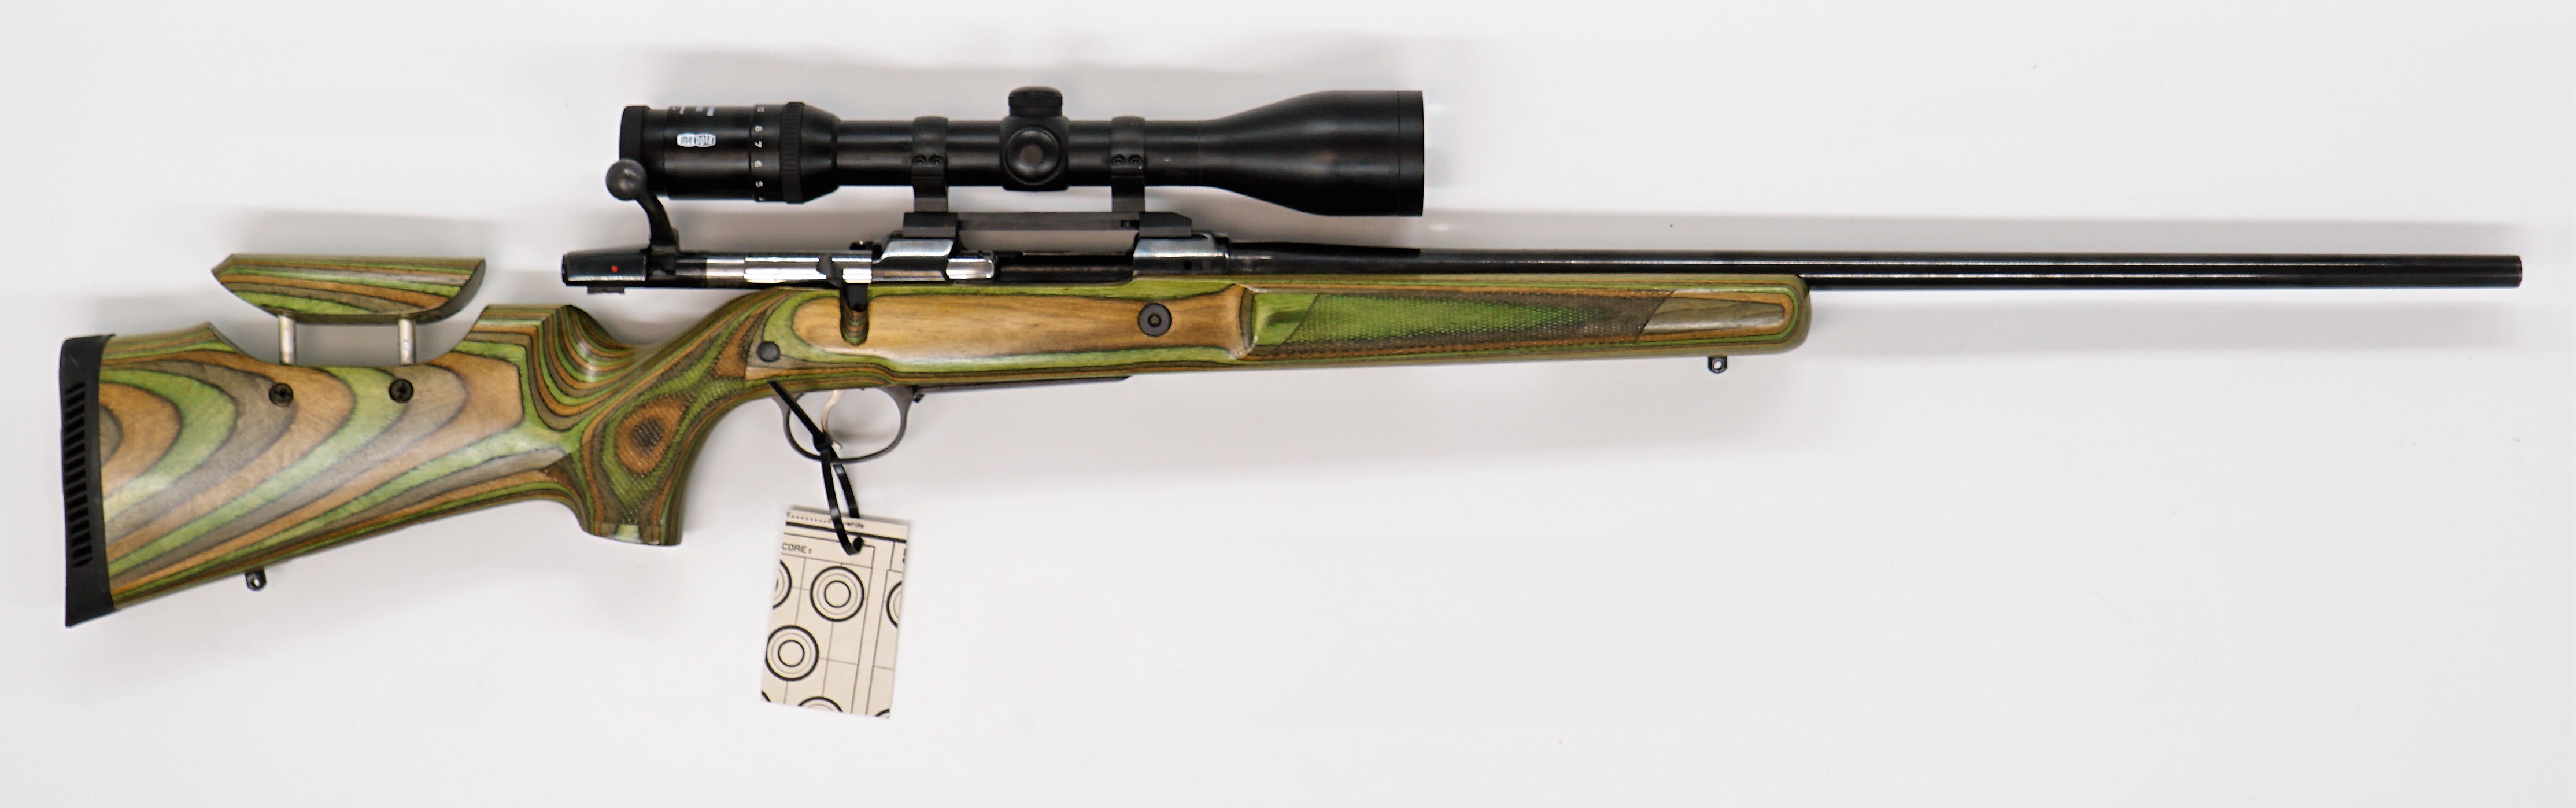 CZ 550 9,3x62 kivääri + Meopta Artemis 2100  3-12x50, käytetty MT